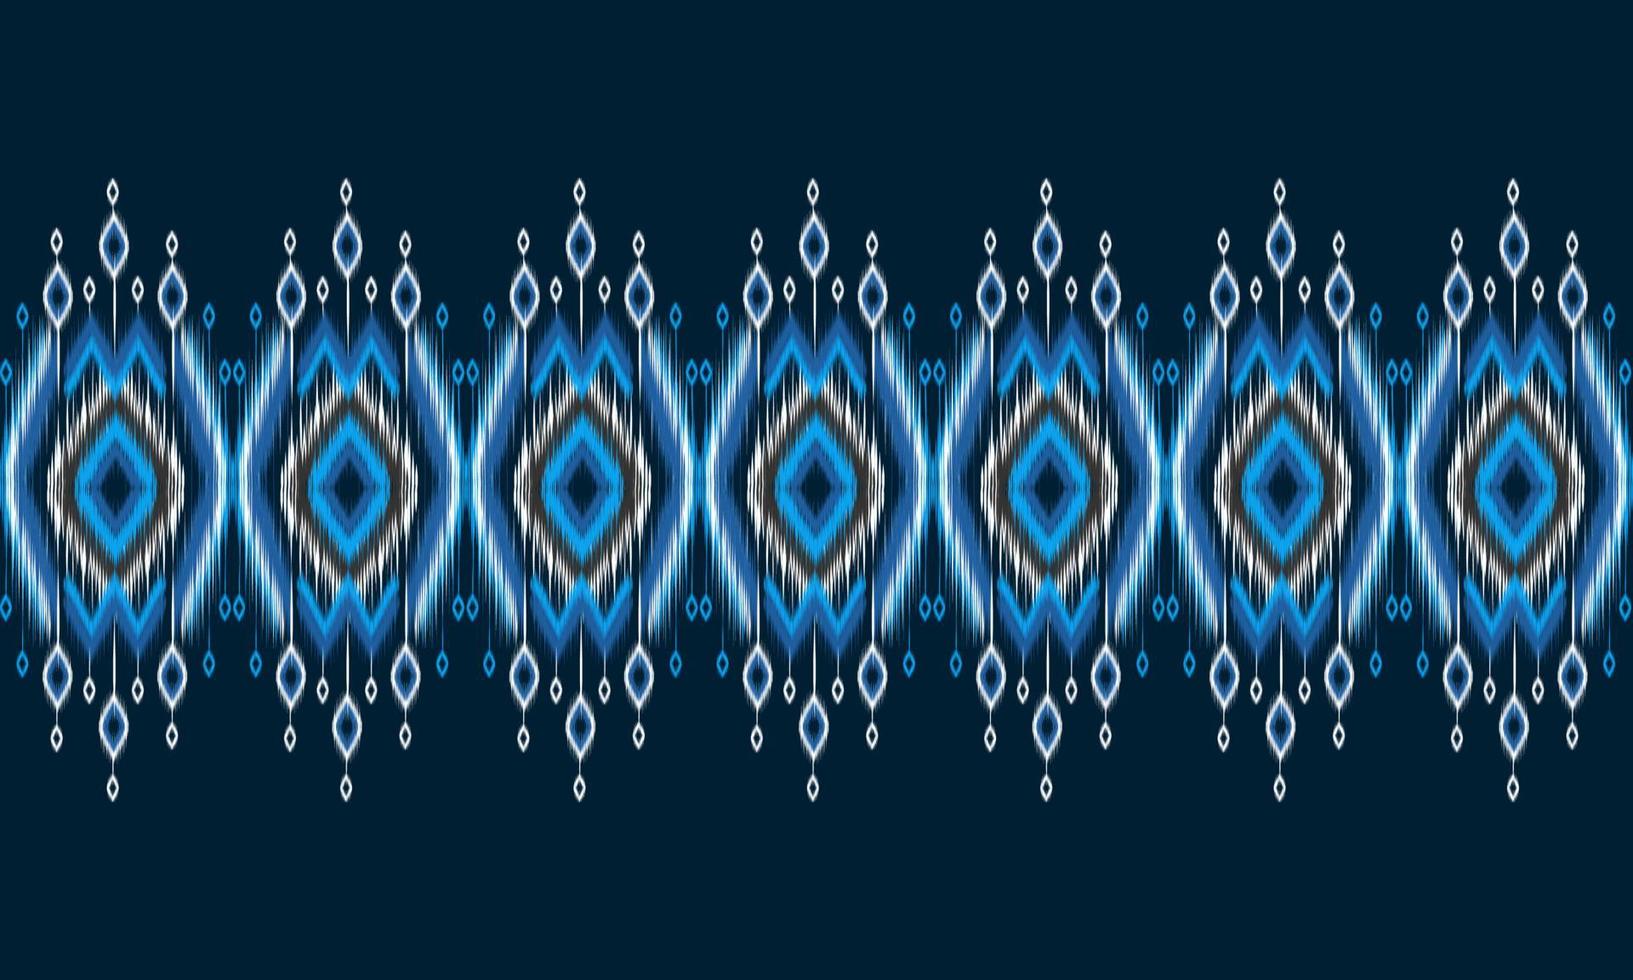 geometrische ethnische orientalische Muster traditionelles Design für Hintergrund, Teppich, Tapete, Kleidung, Verpackung, Batik, Stoff, Vektorillustration. Stickerei-Stil. vektor